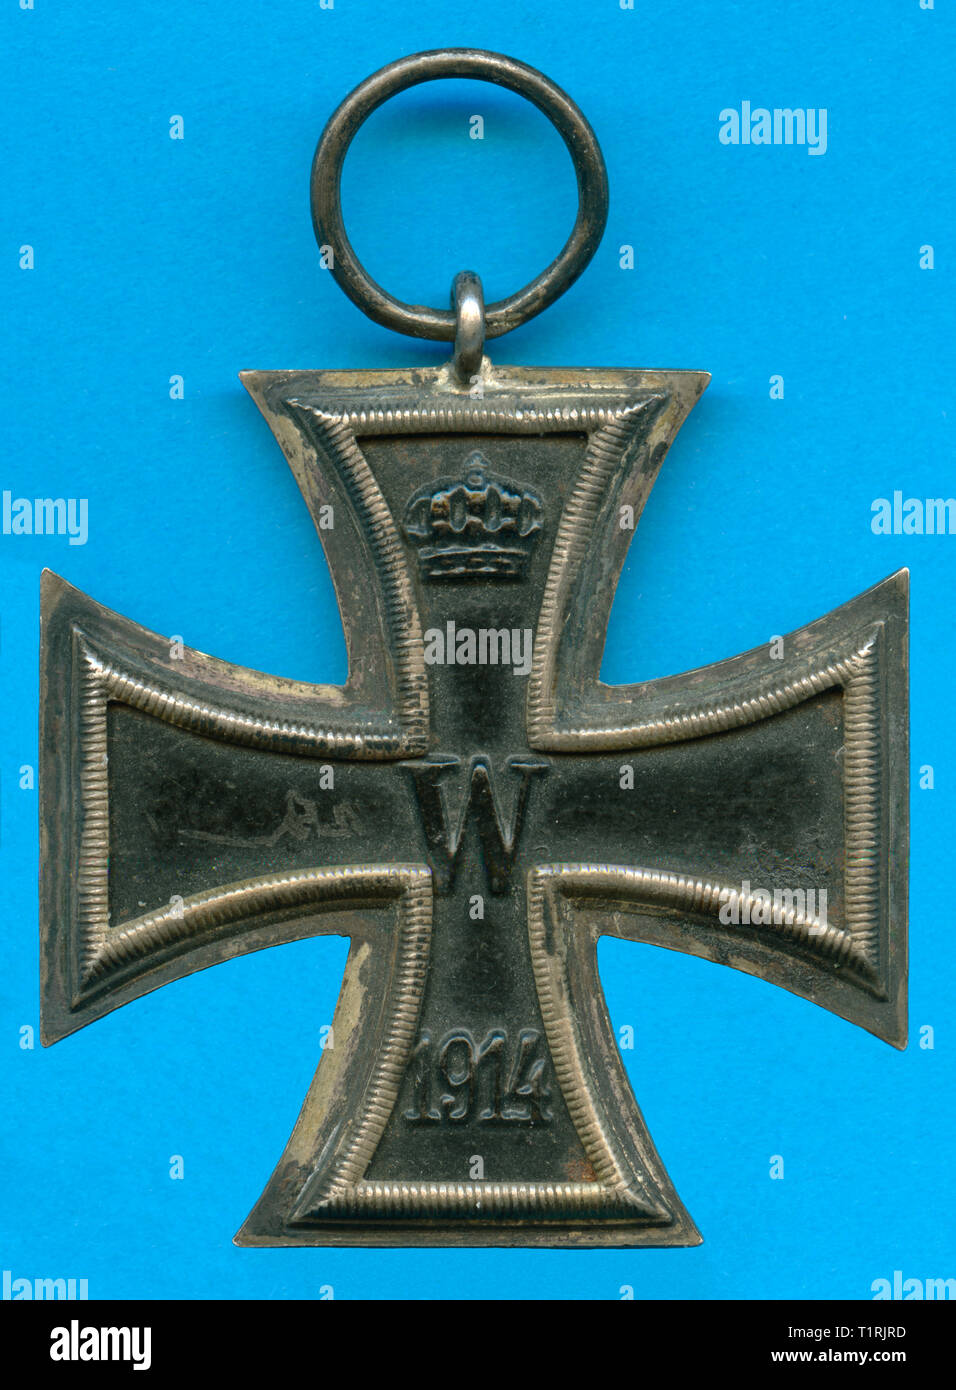 Germania, Berlino, WW I, decorazione militare, croce di ferro di seconda classe, complementare alla decorazione con corona, il W e l'anno 1914. , Additional-Rights-Clearance-Info-Not-Available Foto Stock